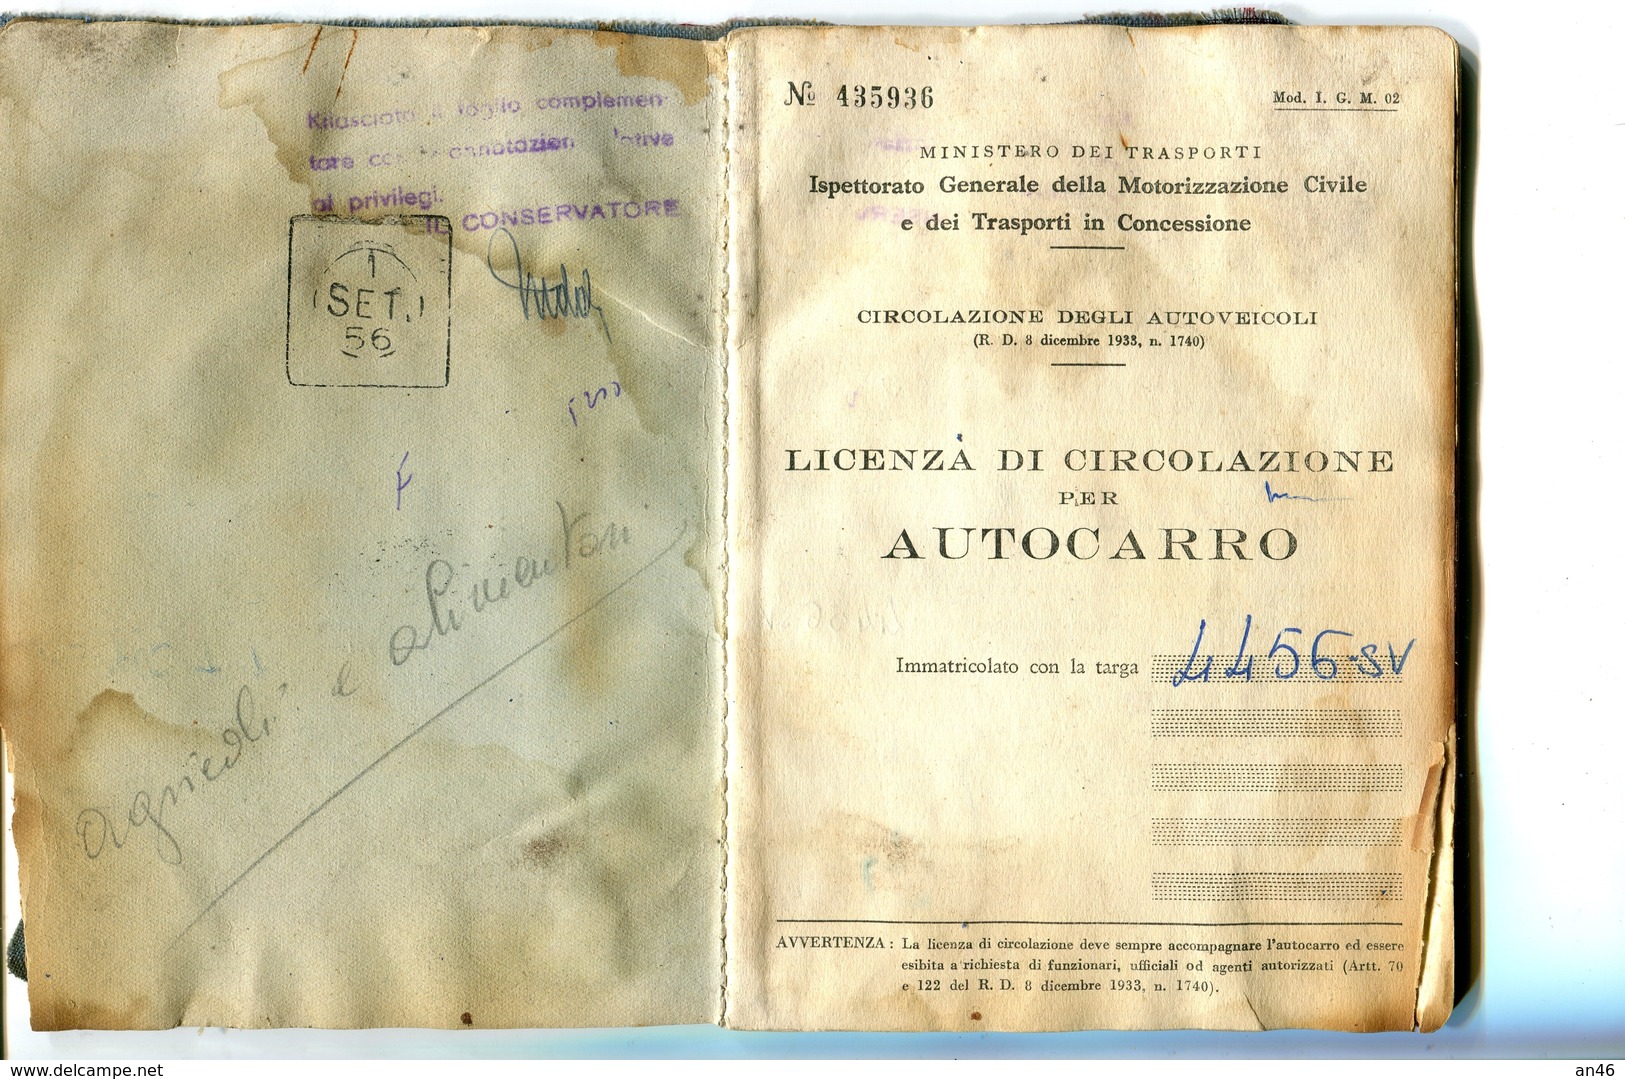 TESSERA_TESSERE_DOCUMENTO/I-"LICENZA PER CIRCOLAZIONE DI AUTOCARRO-MINISTERO TRASPORTI-SETT.1956- - Collezioni